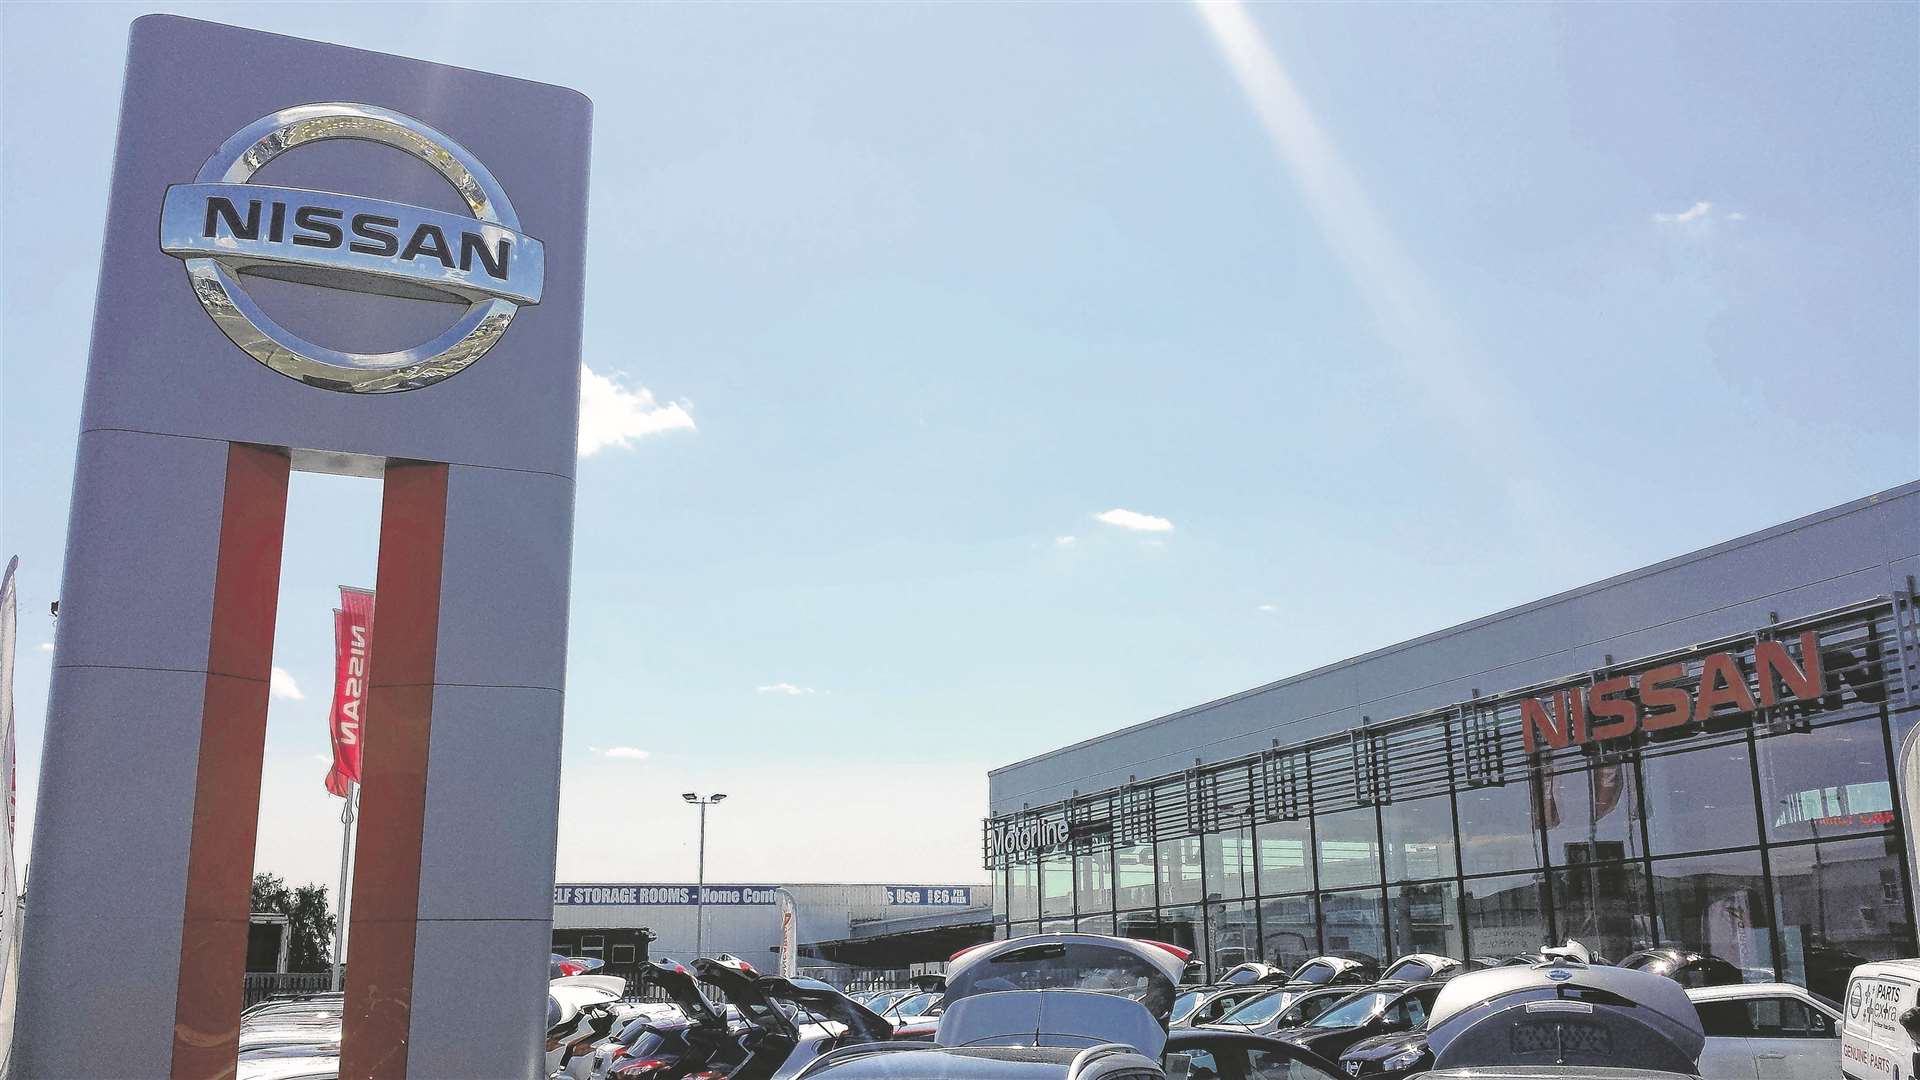 The revamped Motorline Nissan dealership in Maidstone